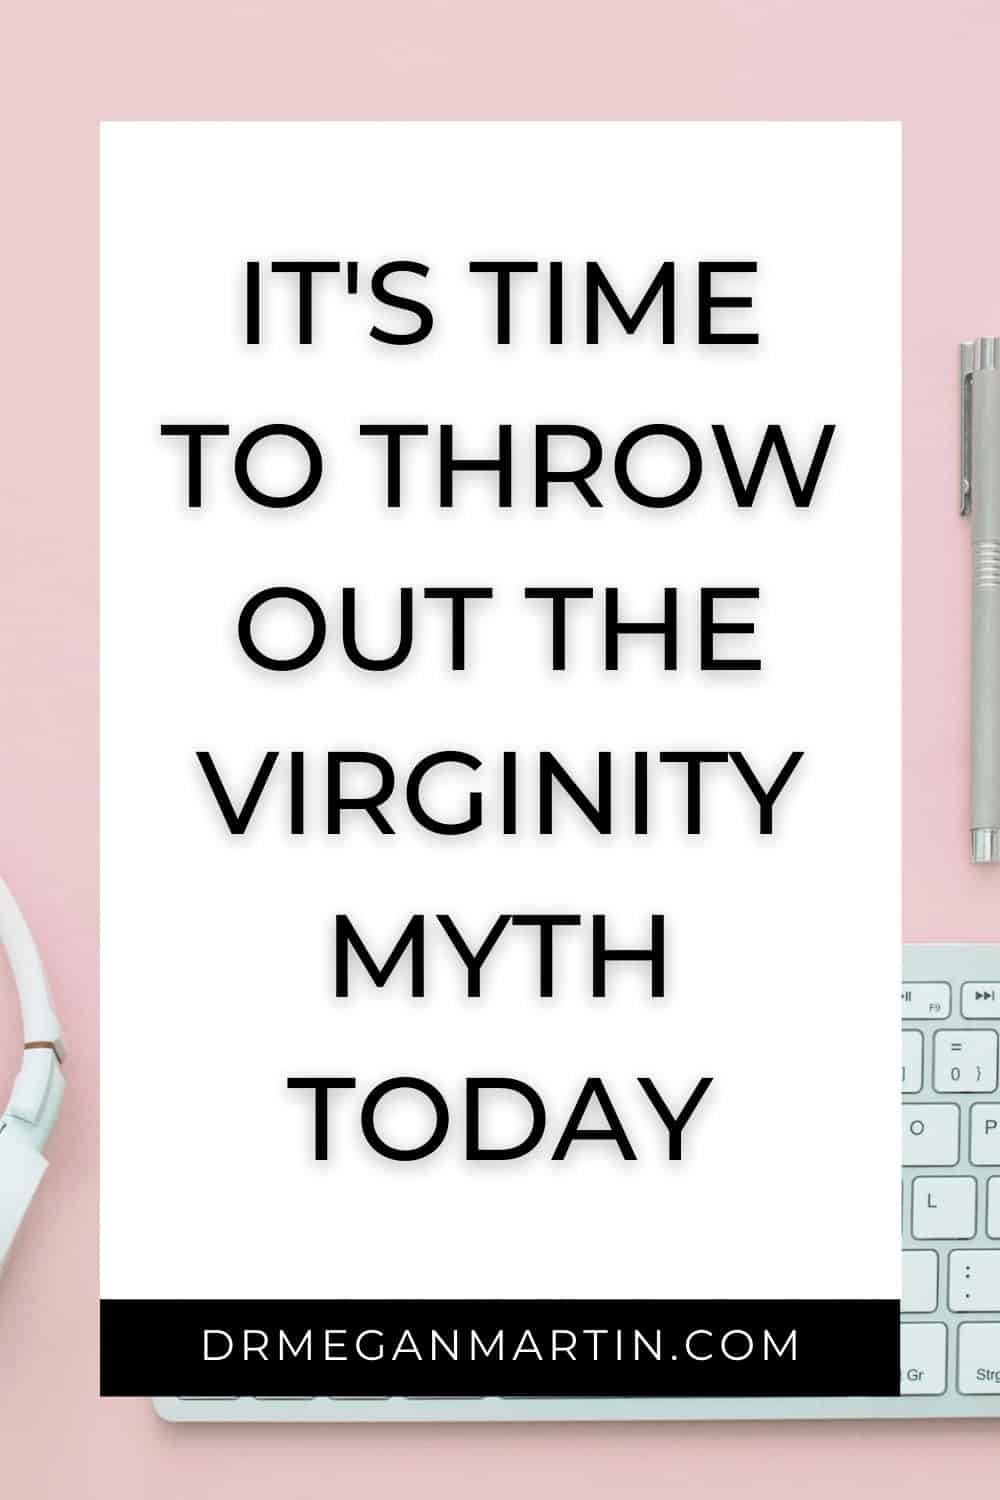 The virginity myth